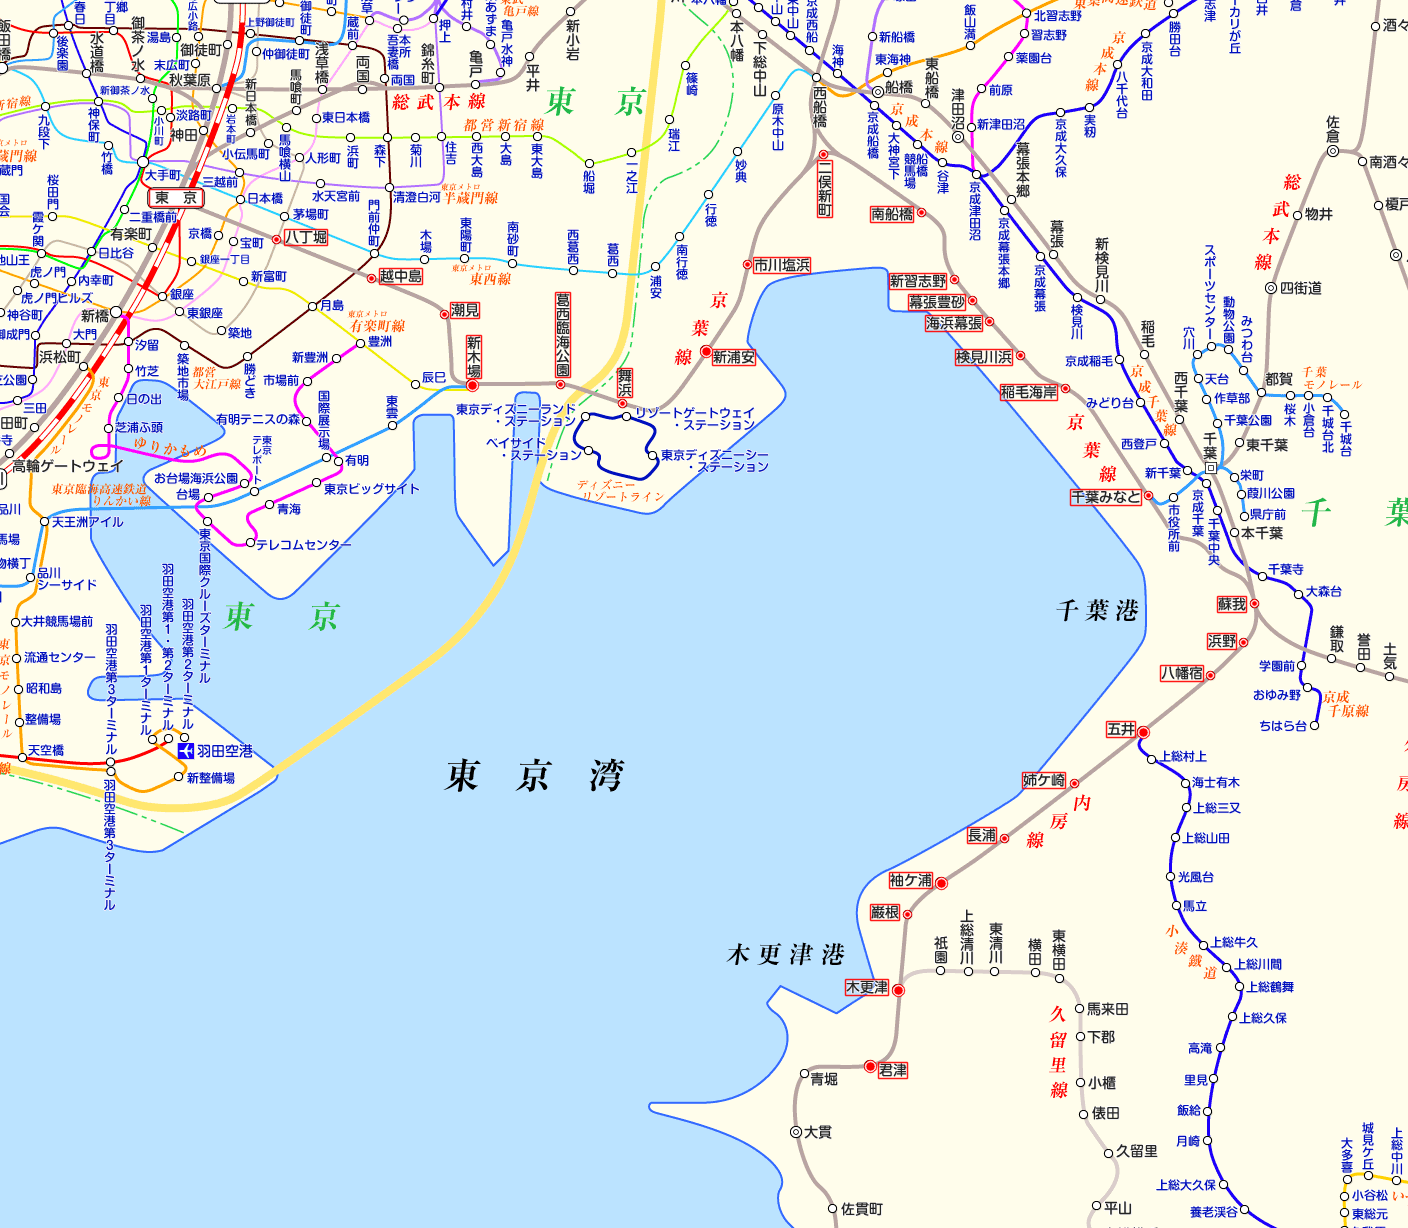 京葉線 君津行きの路線図